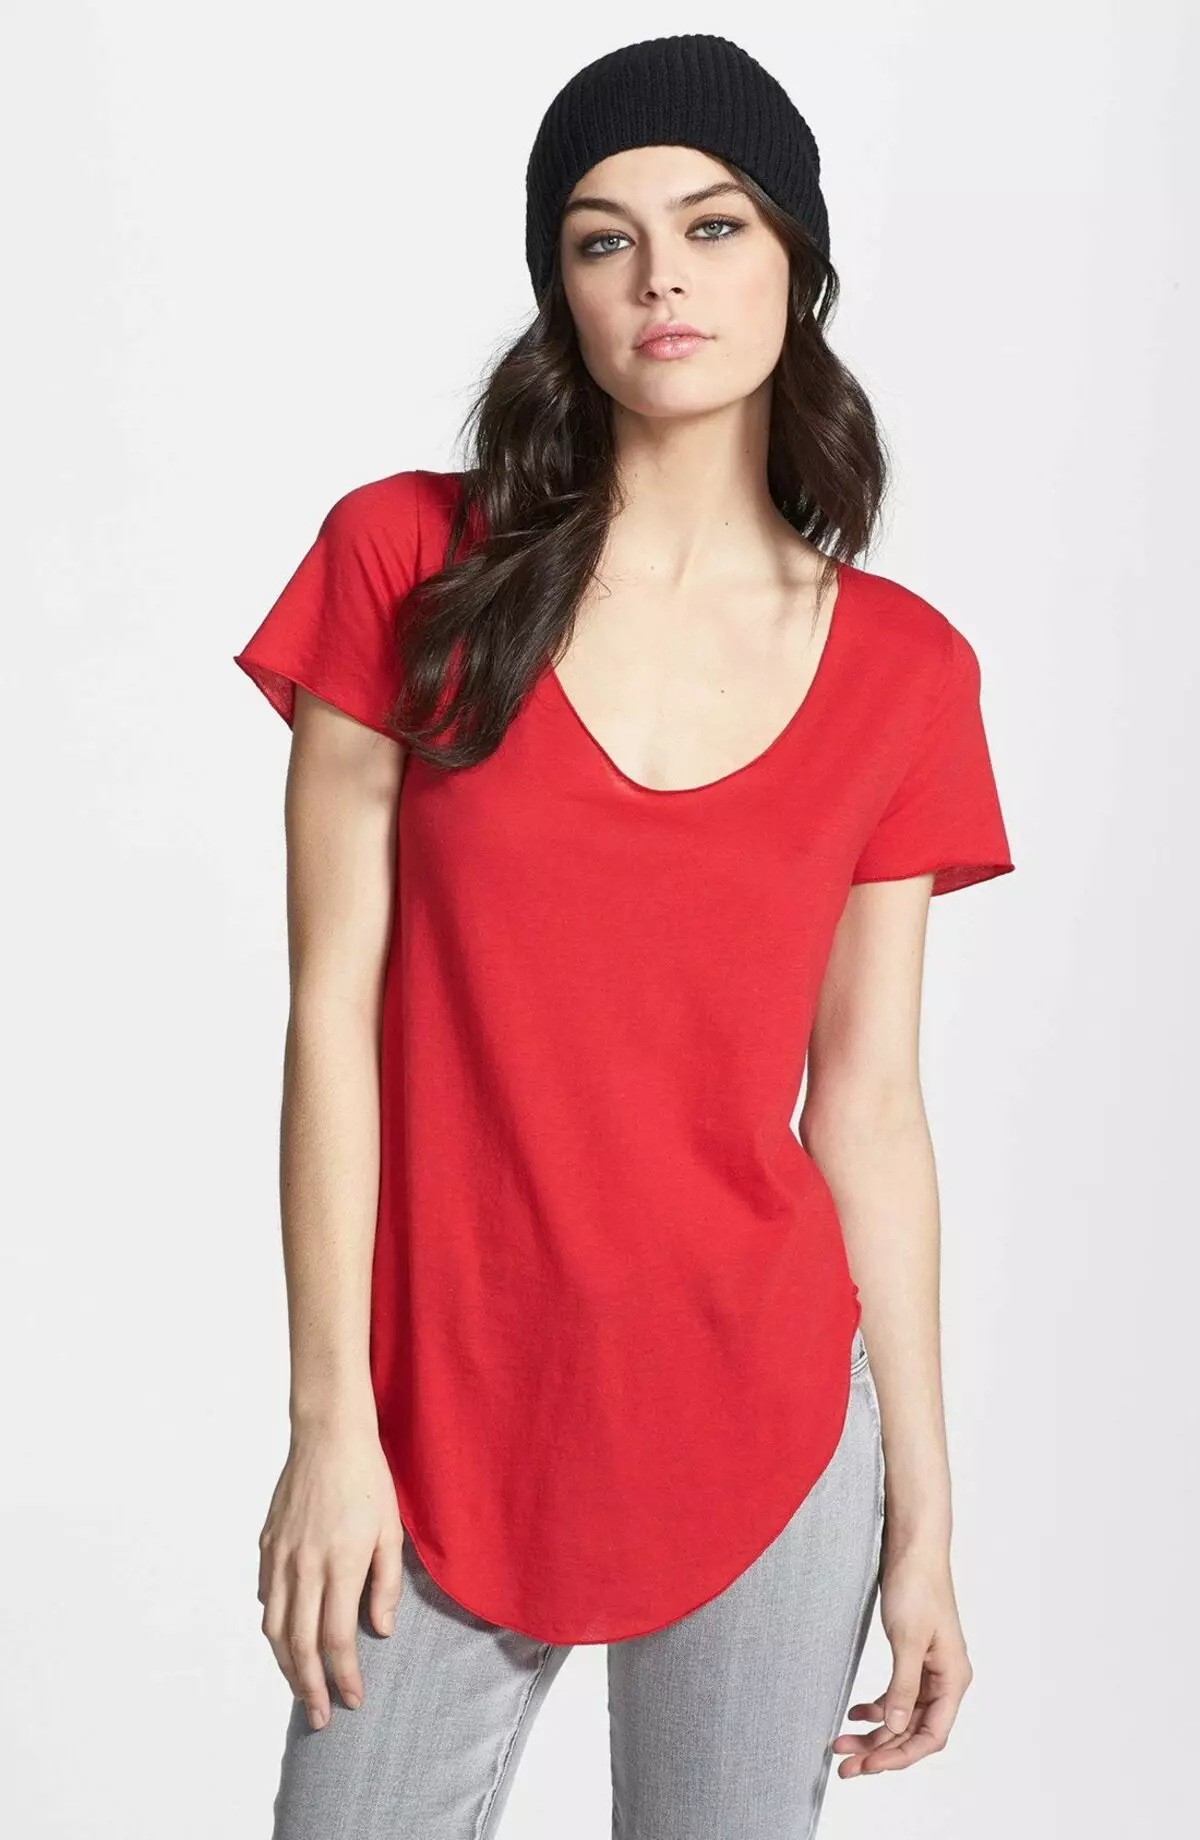 Röd T-shirt (78 bilder): Vad ska man bära och kombinera kvinnliga t-shirts, polo 14584_70